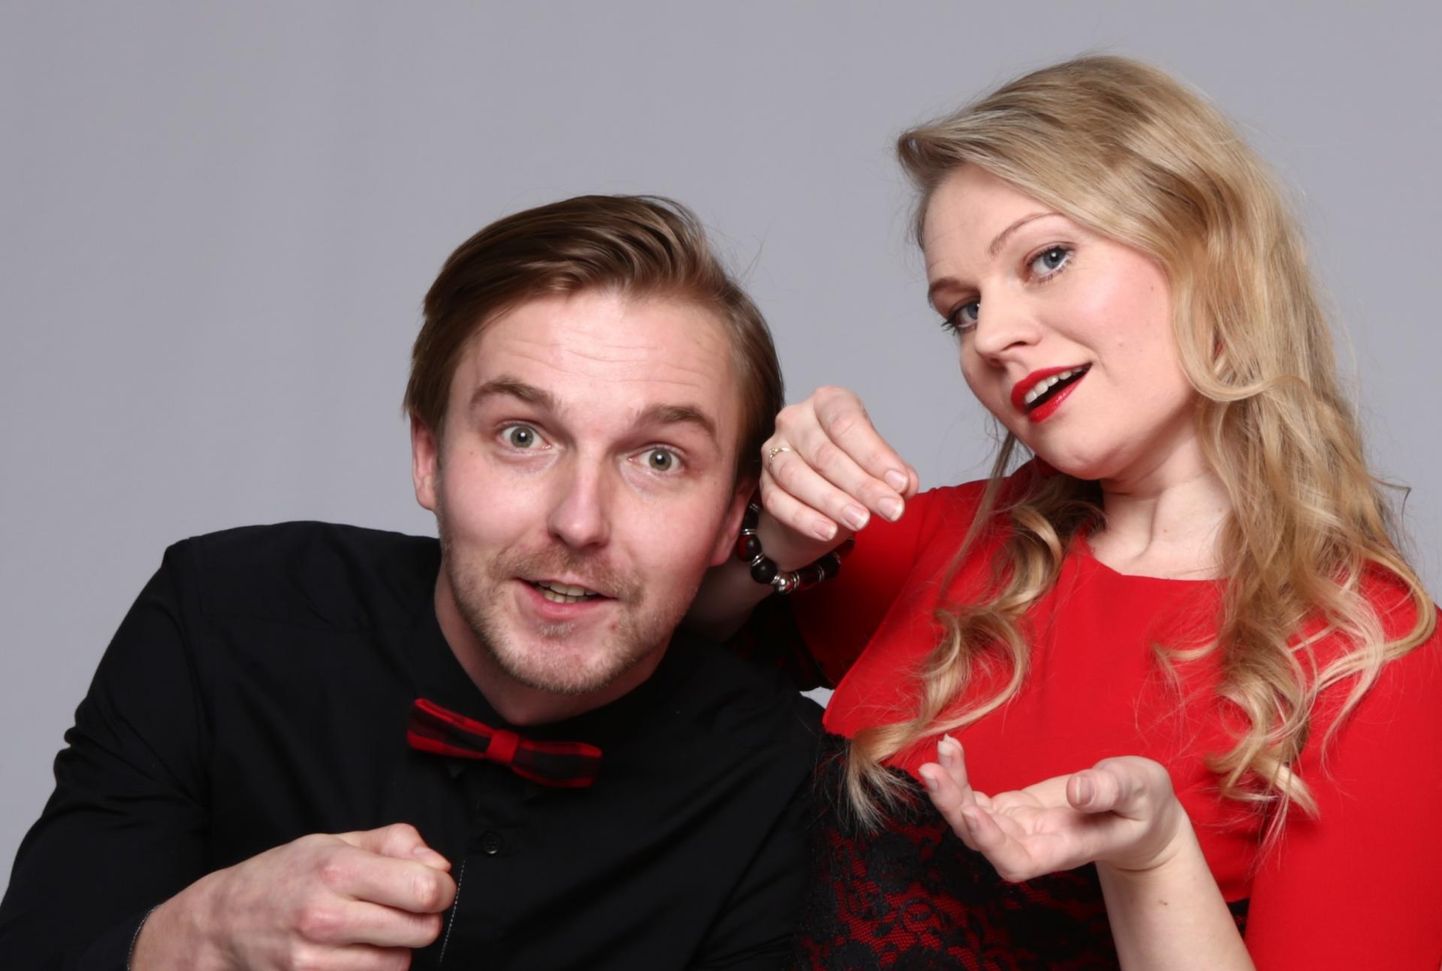 Eesti artistide agentuuri tiitli parima teenuse eest pälvis Improteater Impeerium. Sellesse seltskonda kuuluvad ka näitlejad Maarika Mesipuu-Veebel ja Rauno Kaibiainen.